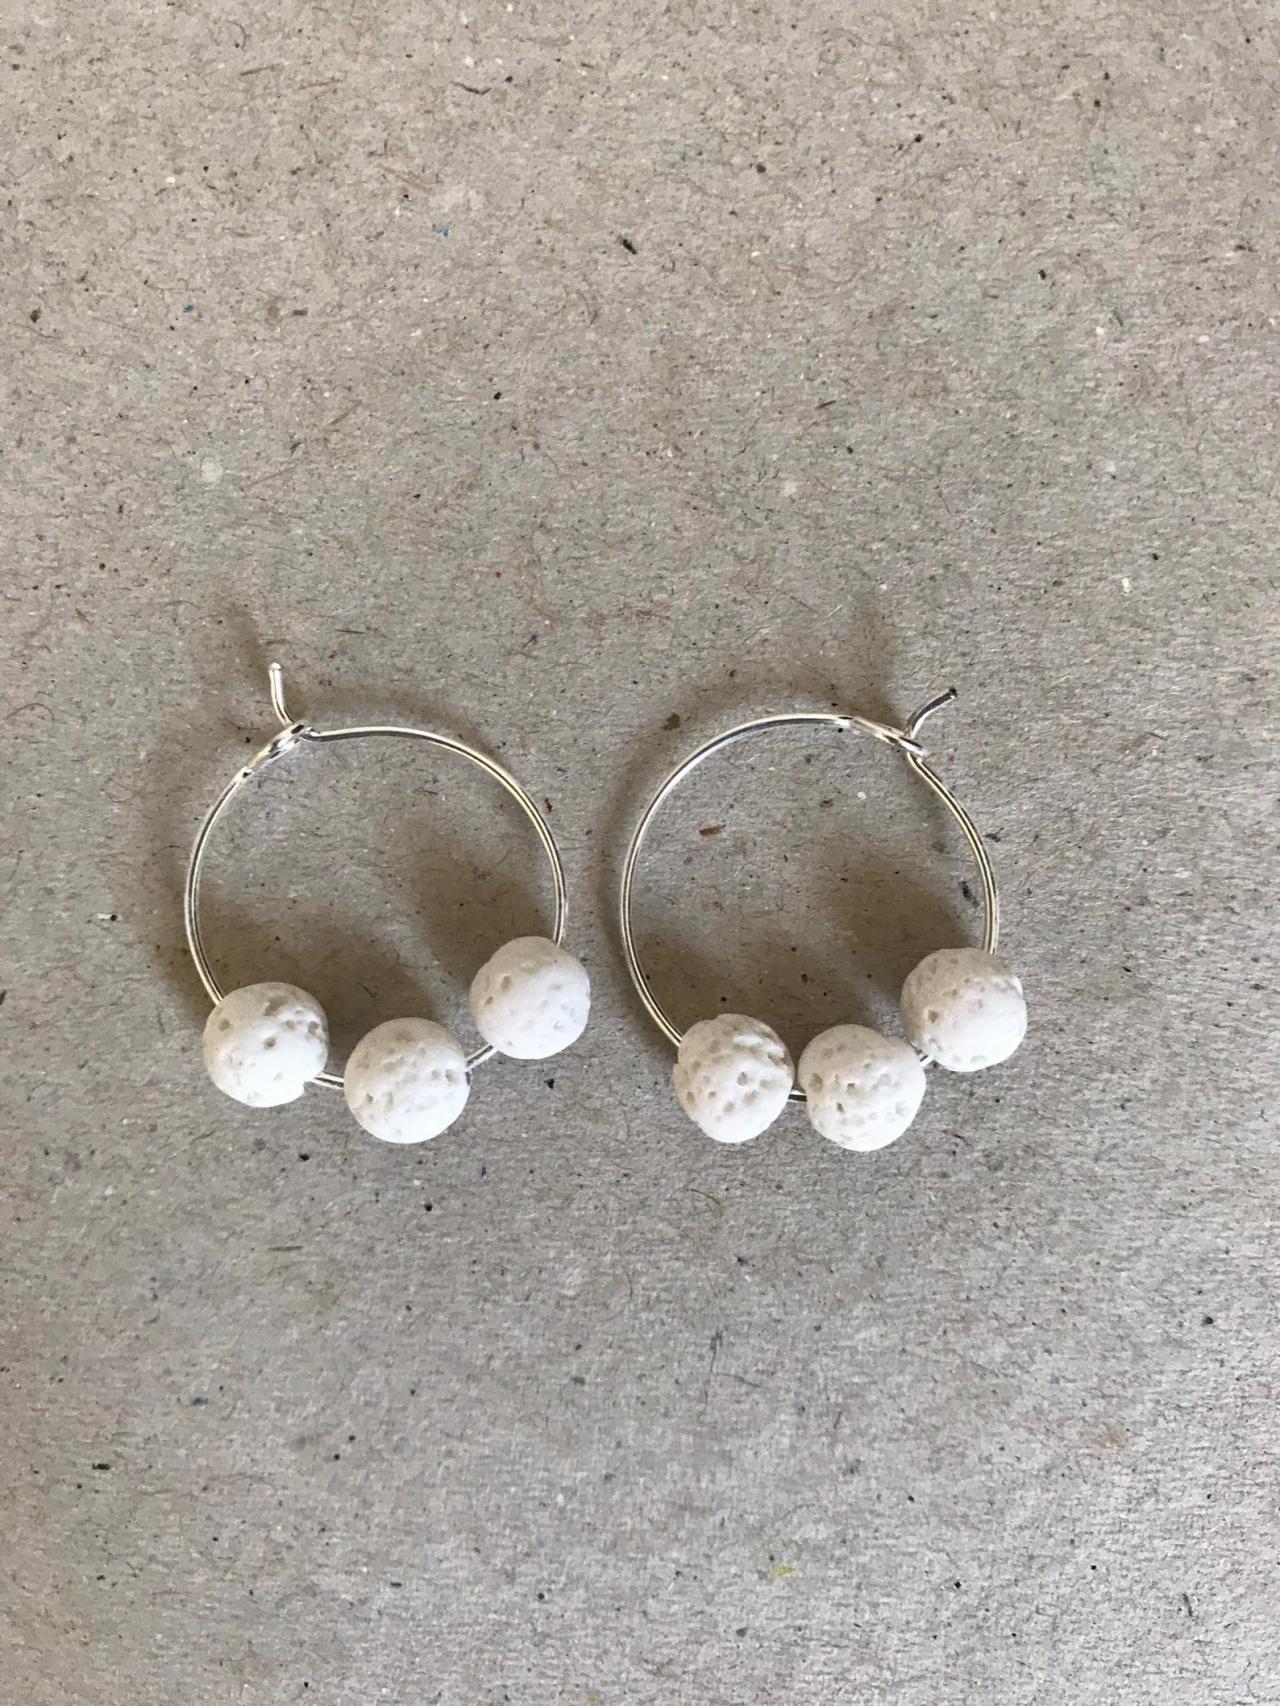 Lava Dangle Earrings 365 - Silver Metal Earrings White Lava Womenswear Trendy Accessories Boho Pure Lava Stone